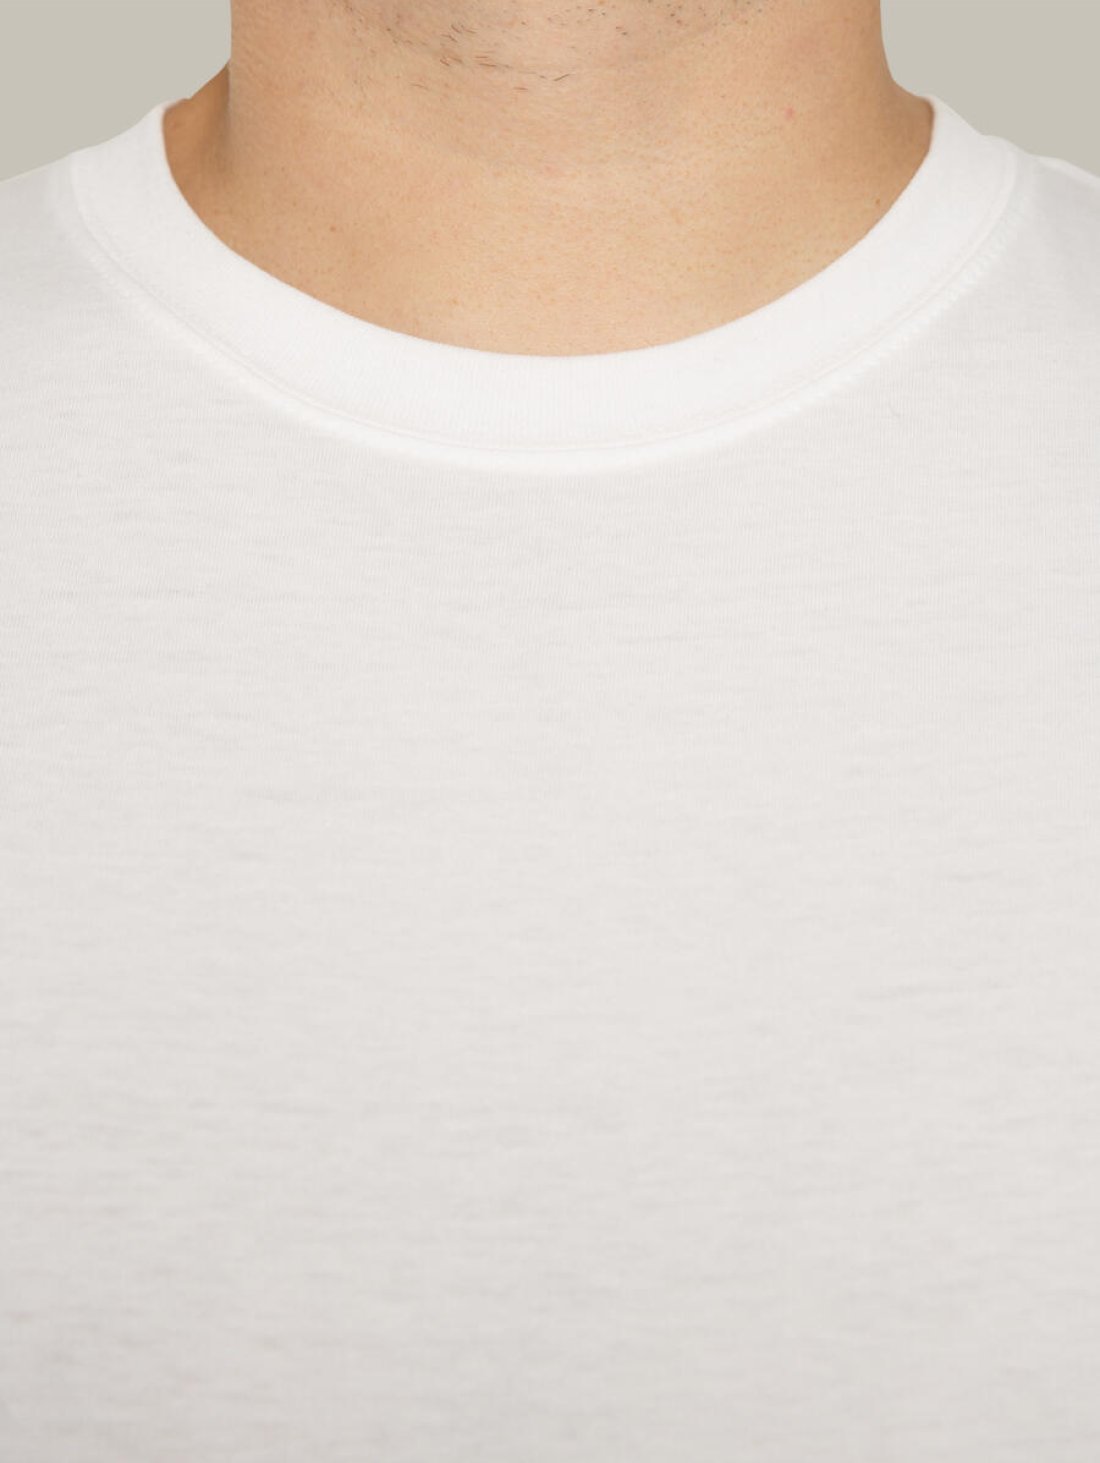 Чоловіча футболка, біла з принтом аватара Hopper 050